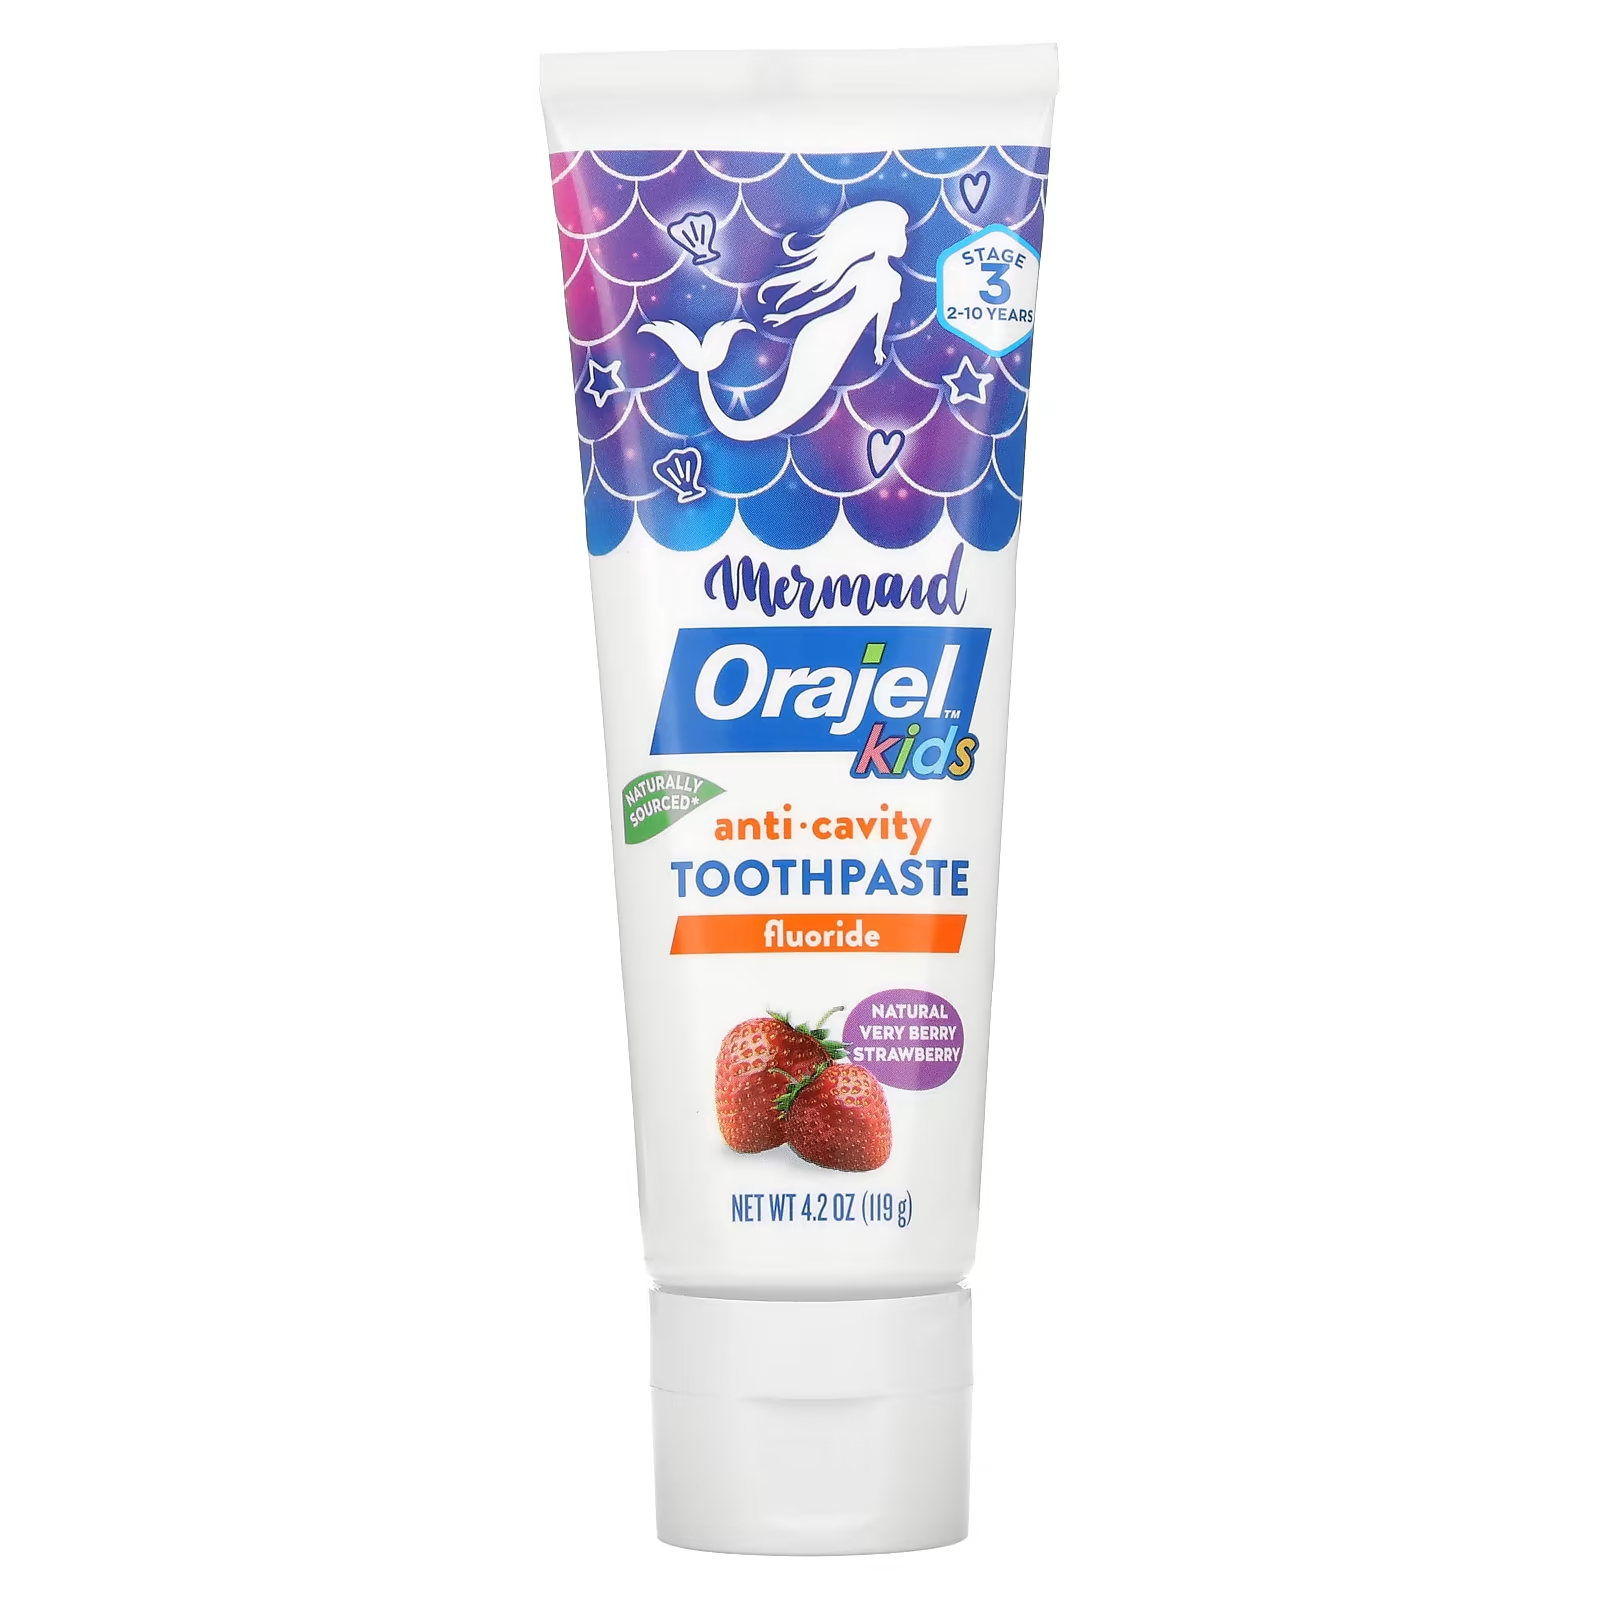 цена Зубная паста Orajel Mermaid Anticavity Fluoride Toothpaste для детей от 2 до 10 лет натуральная ягодная клубника, 119 г